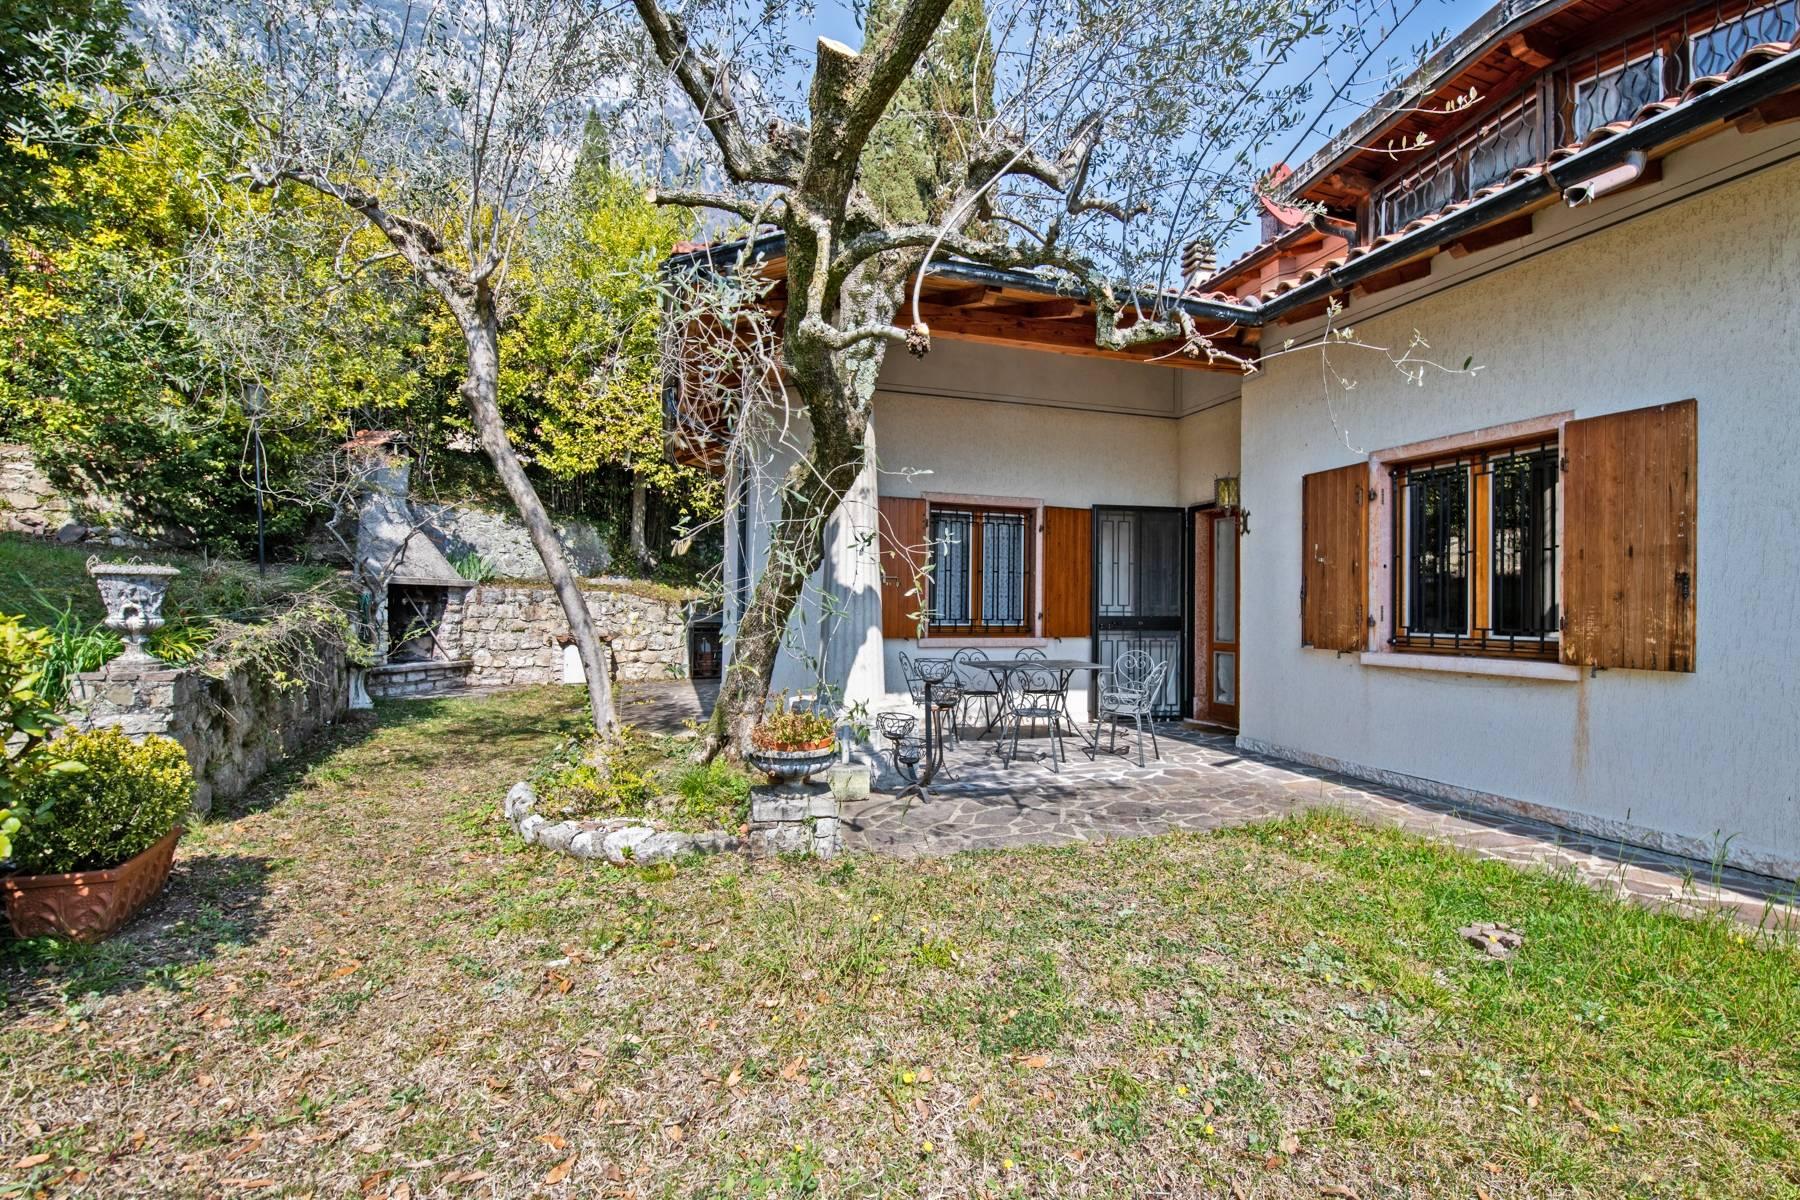 Villa in Gargnano inmitten der Olivenbäume vom Gardasee mit herrlichem Seeblick - 32